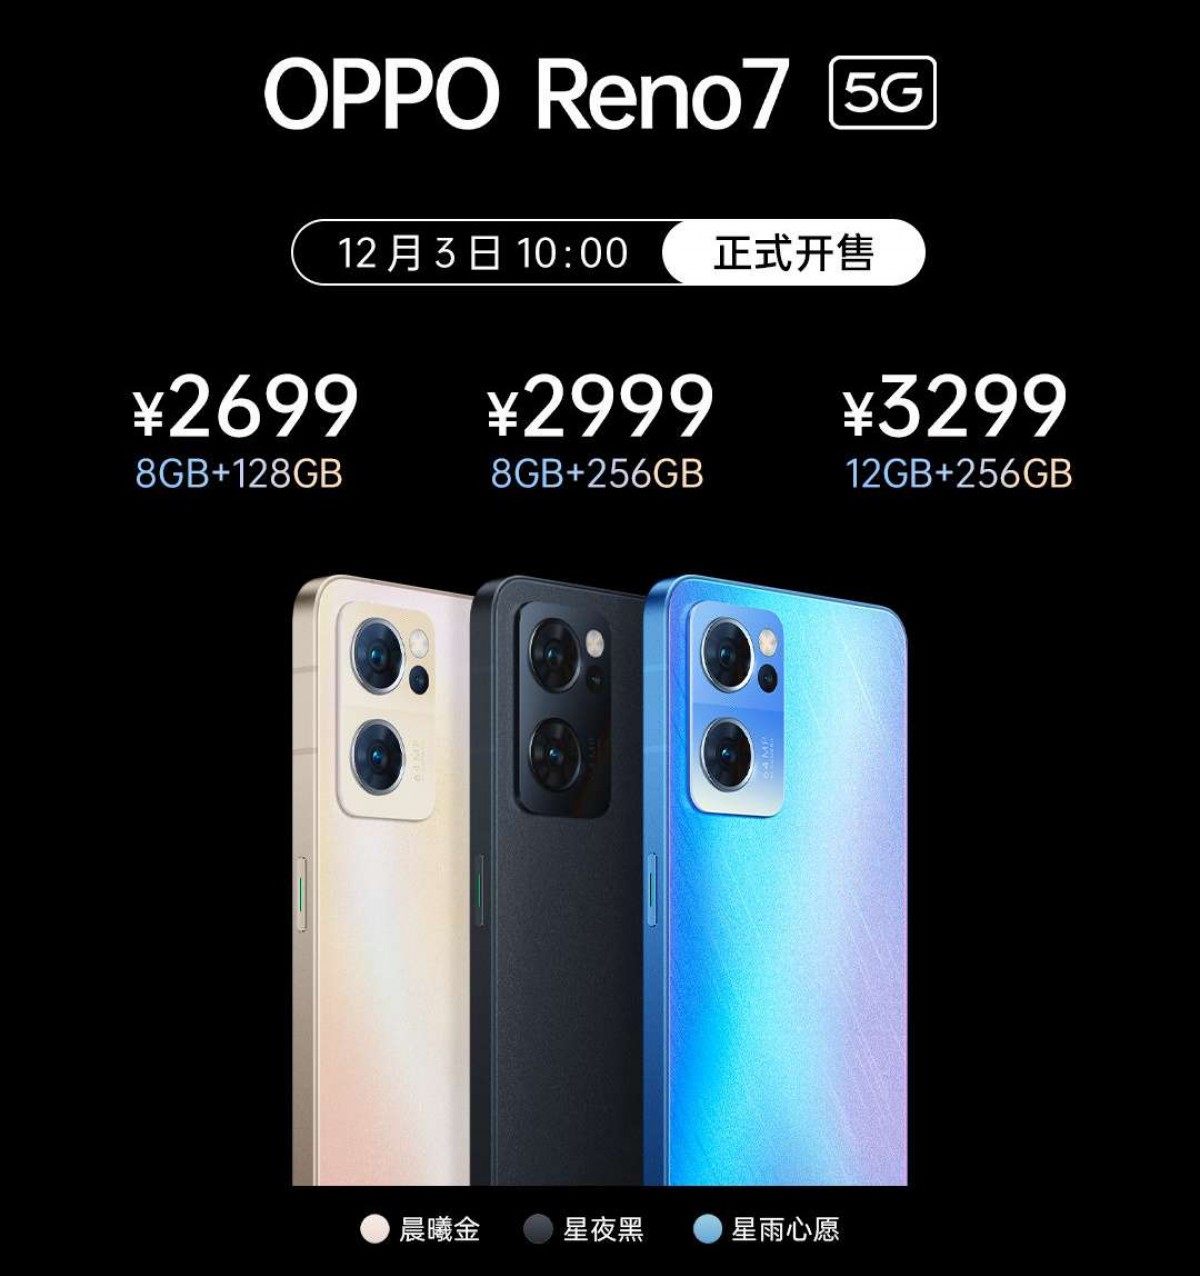 La serie Oppo Reno7 está aquí: Reno7 5G, Reno7 Pro 5G y Reno7 SE 5G